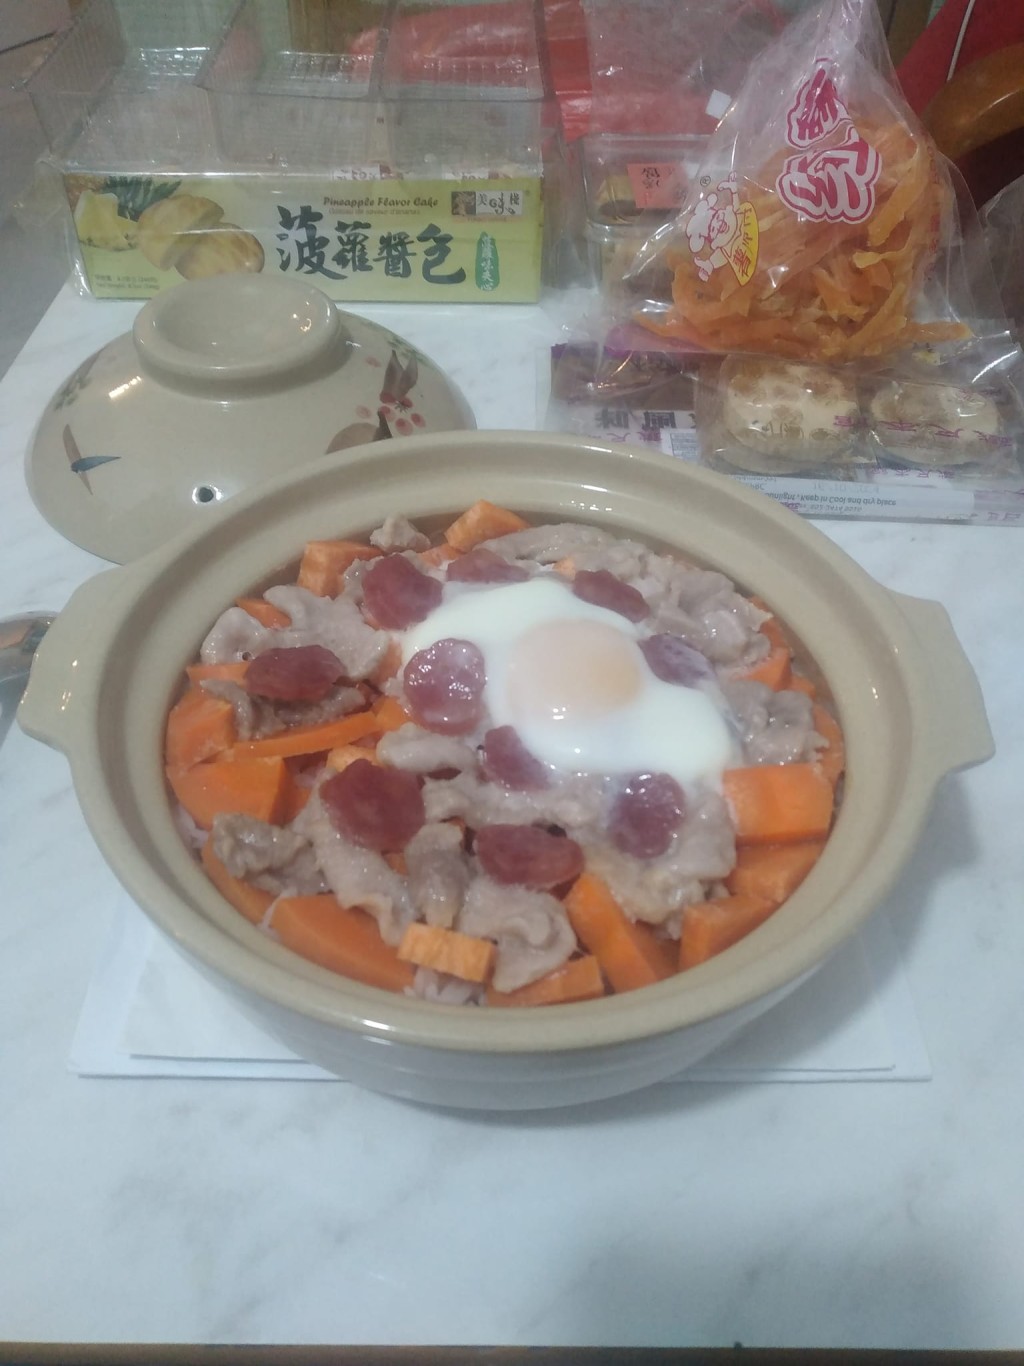 紅蘿蔔粒 臘腸片 豬肉片 太陽蛋 煲仔飯（圖片來源：Facebook@香港茶餐廳及美食關注組）